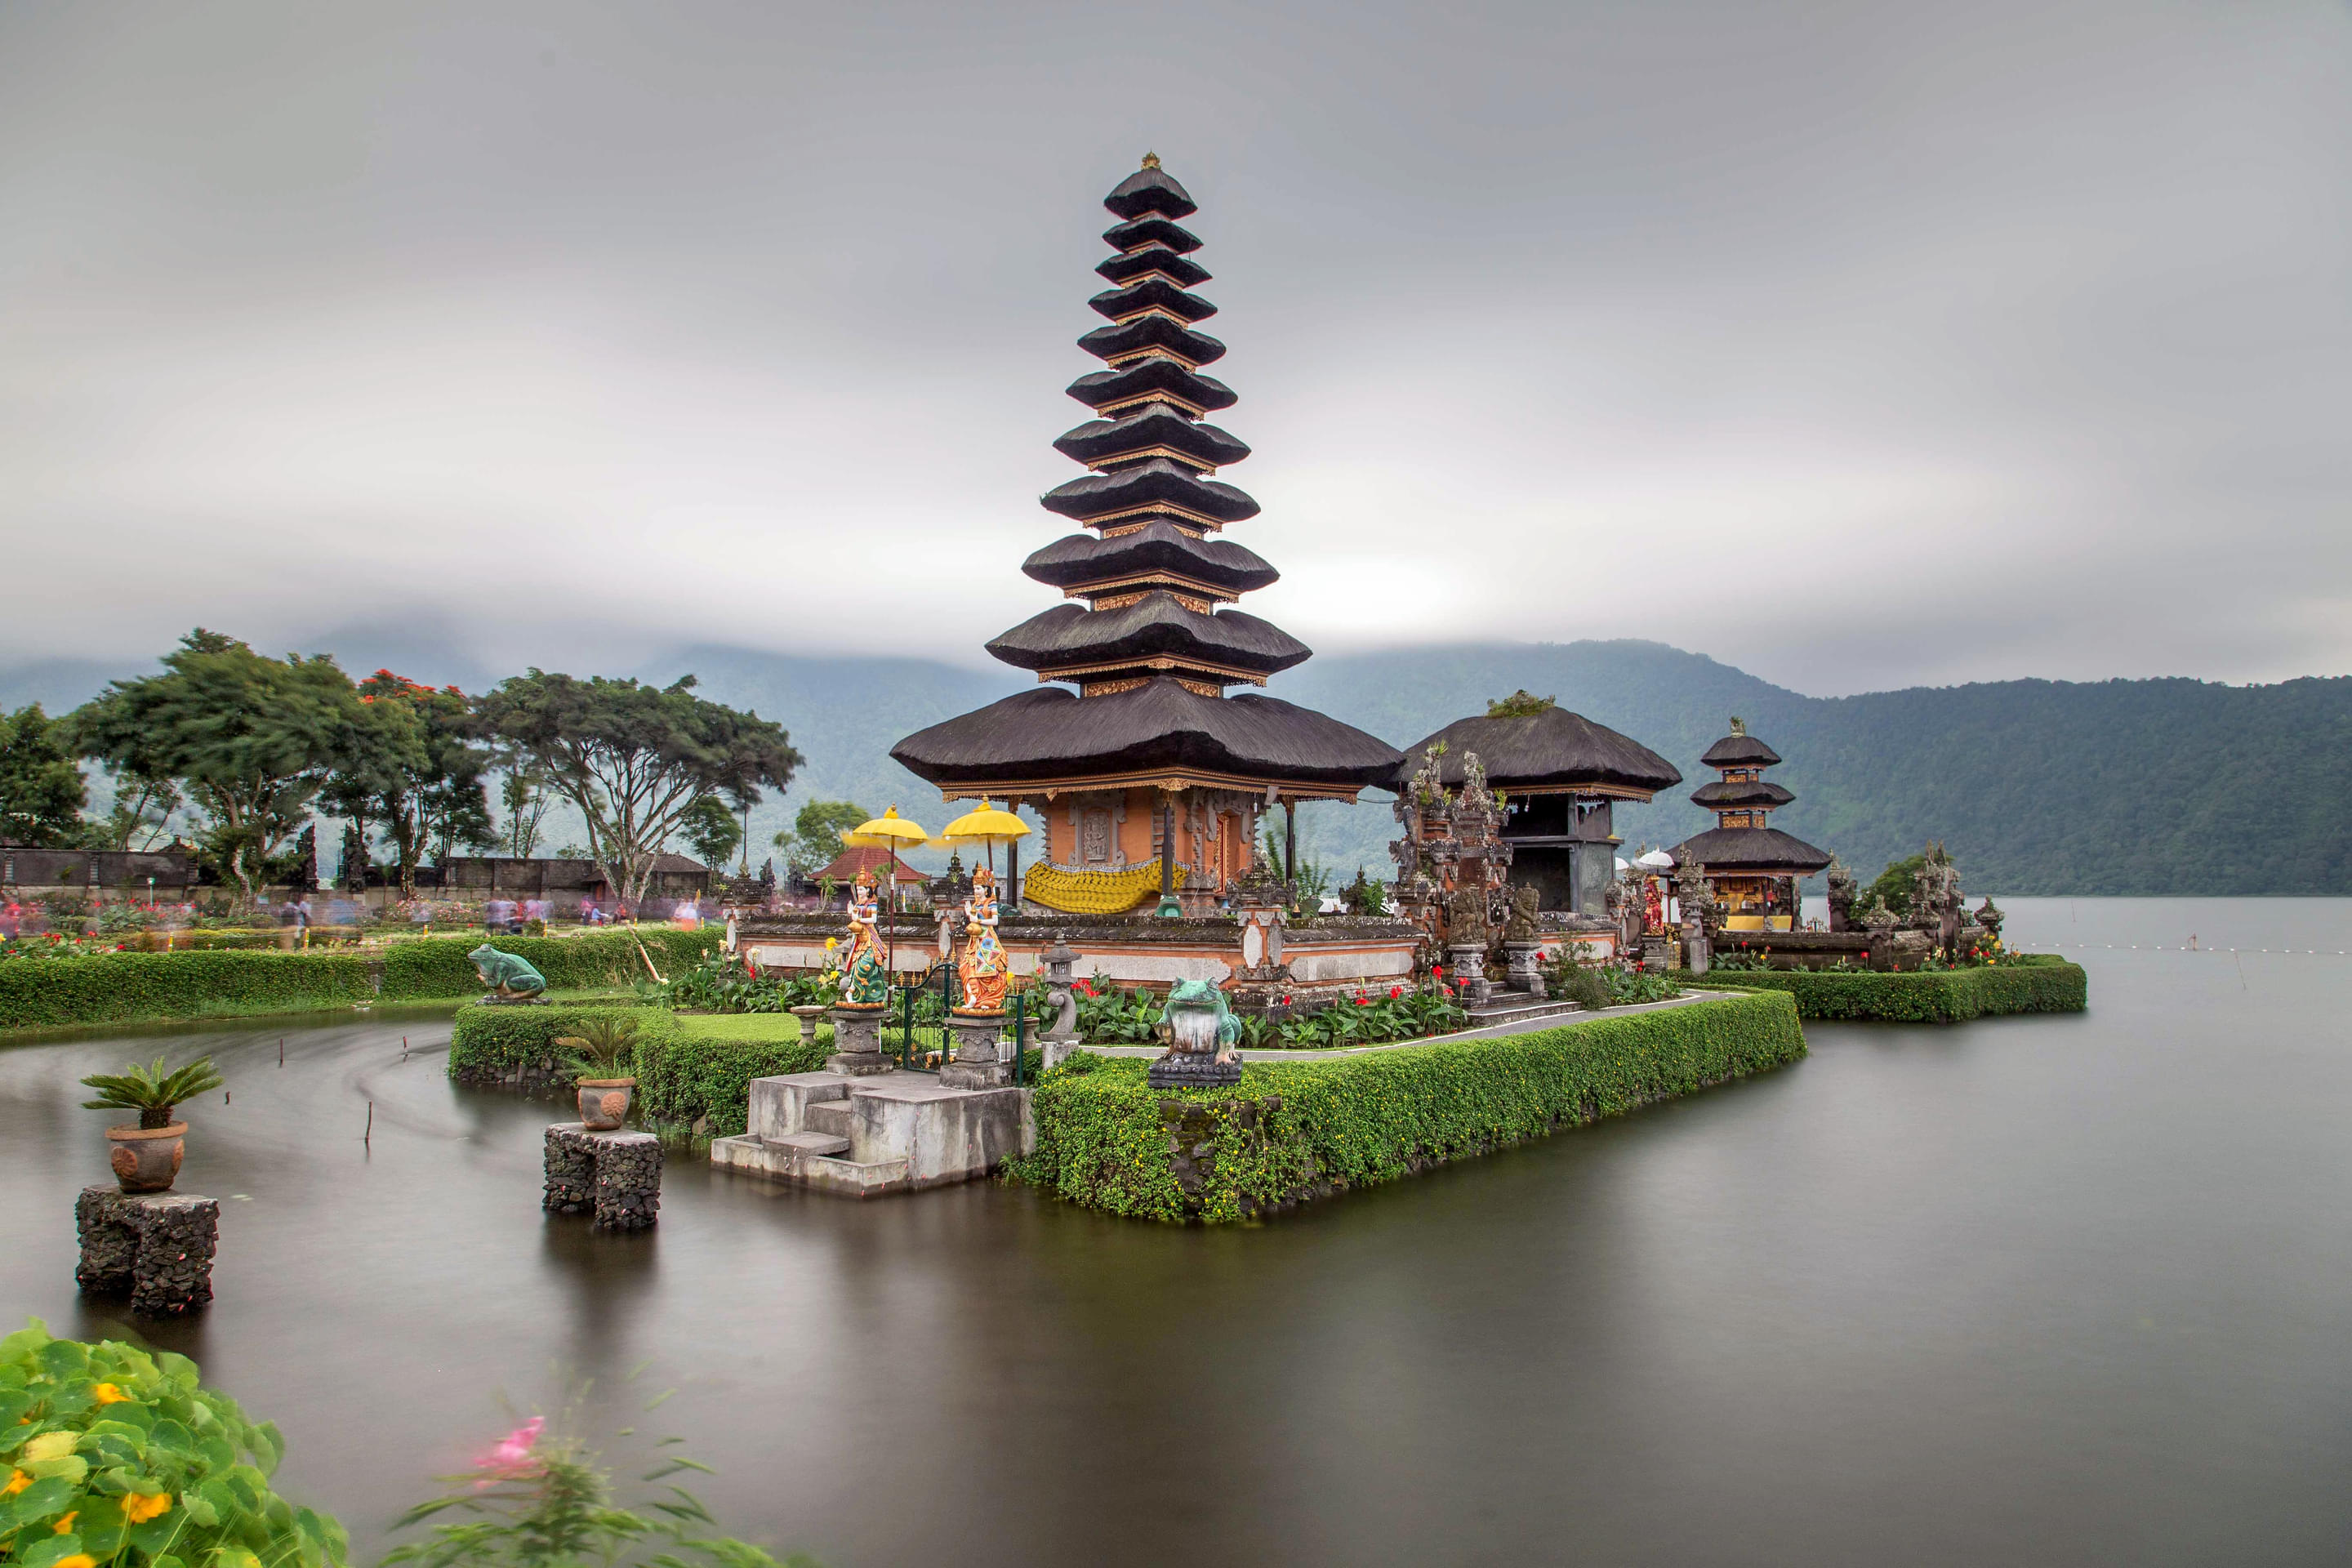 Ulun Danu Batur Temple Overview